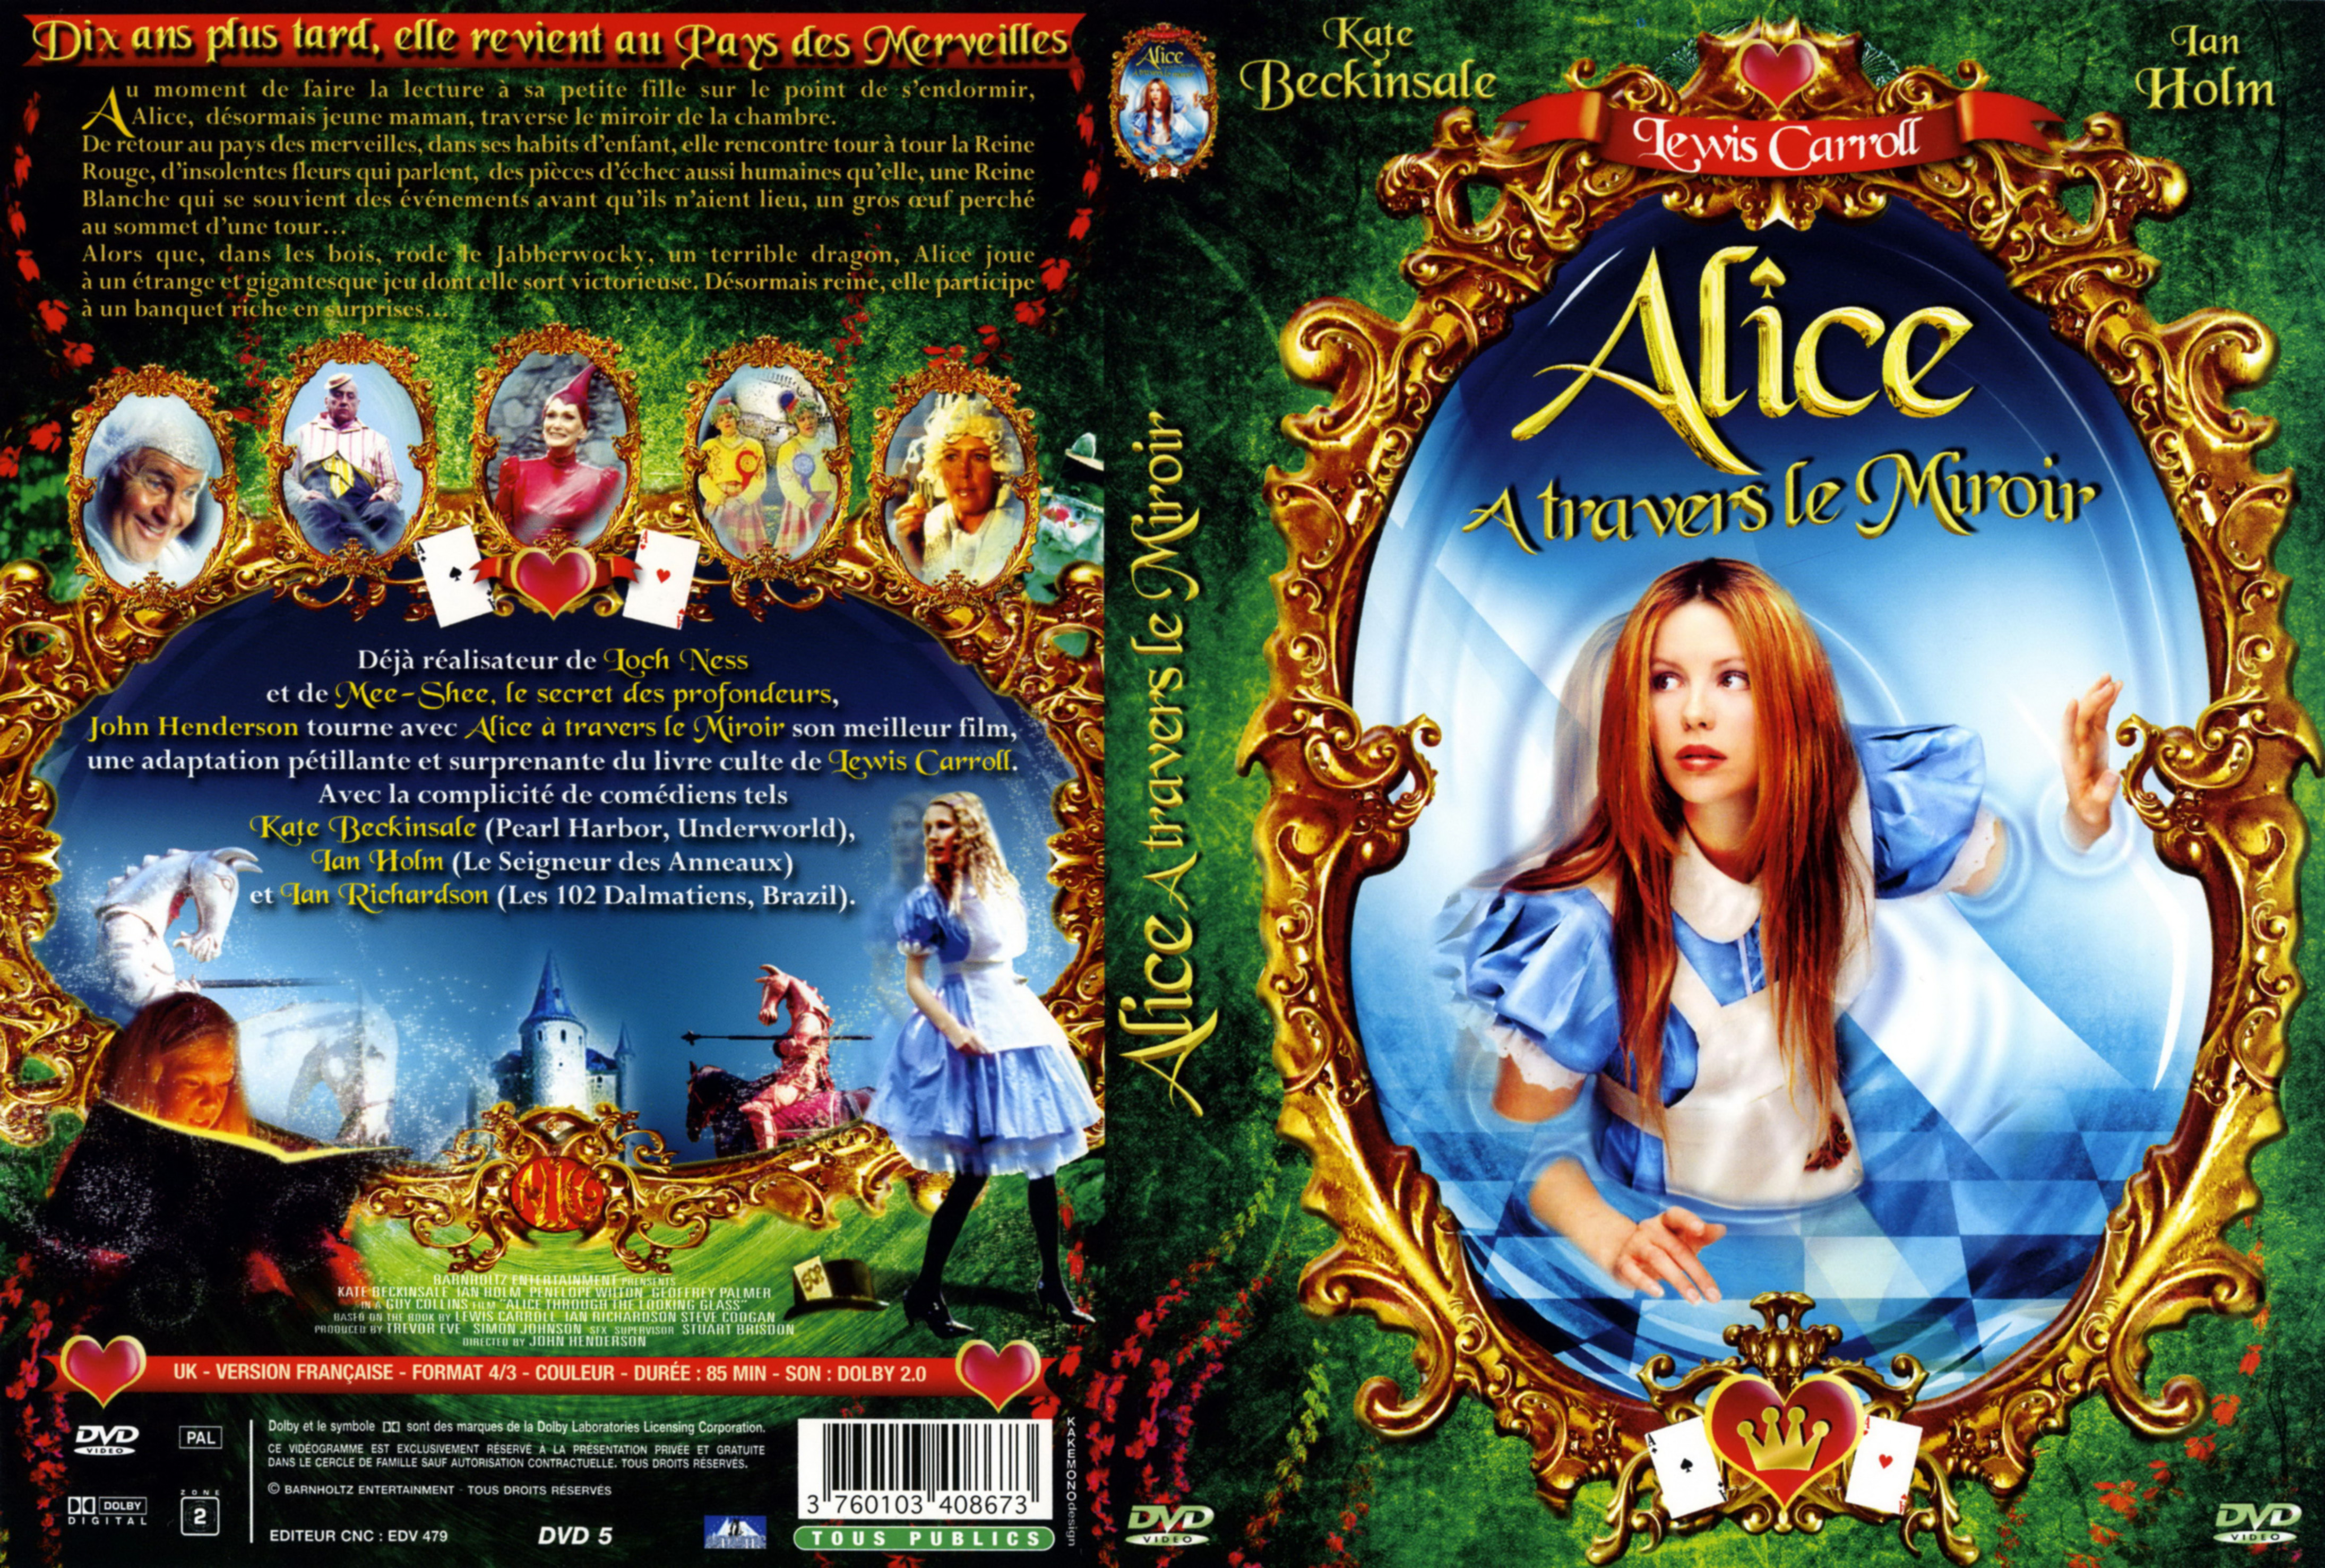 Jaquette DVD Alice a travers le miroir